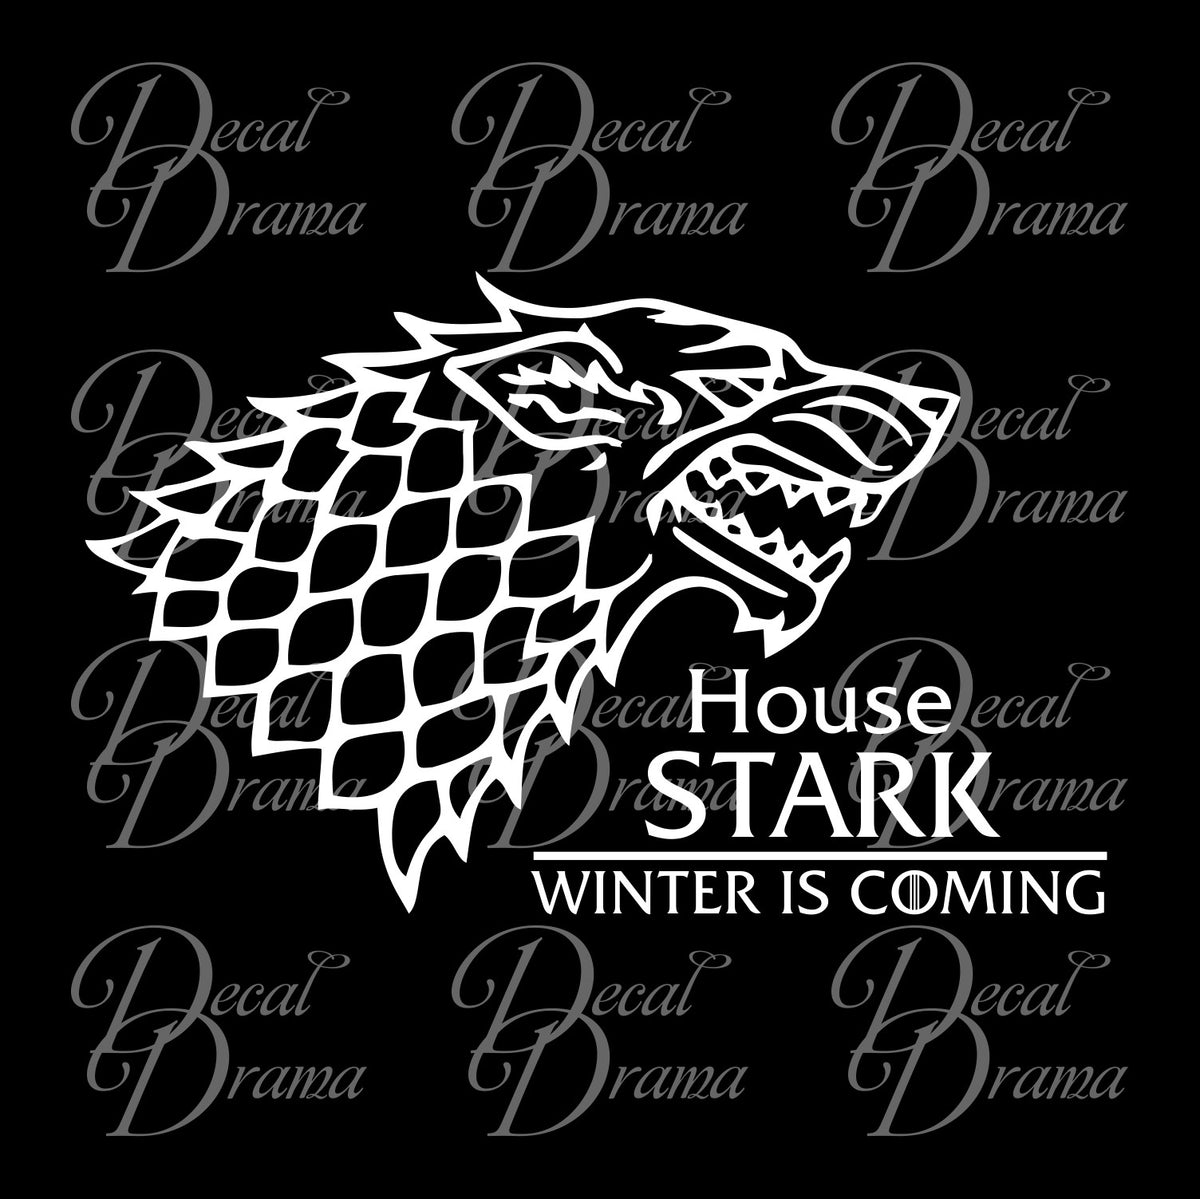 Stark Winter is Coming Direwolf Design Game of Thrones